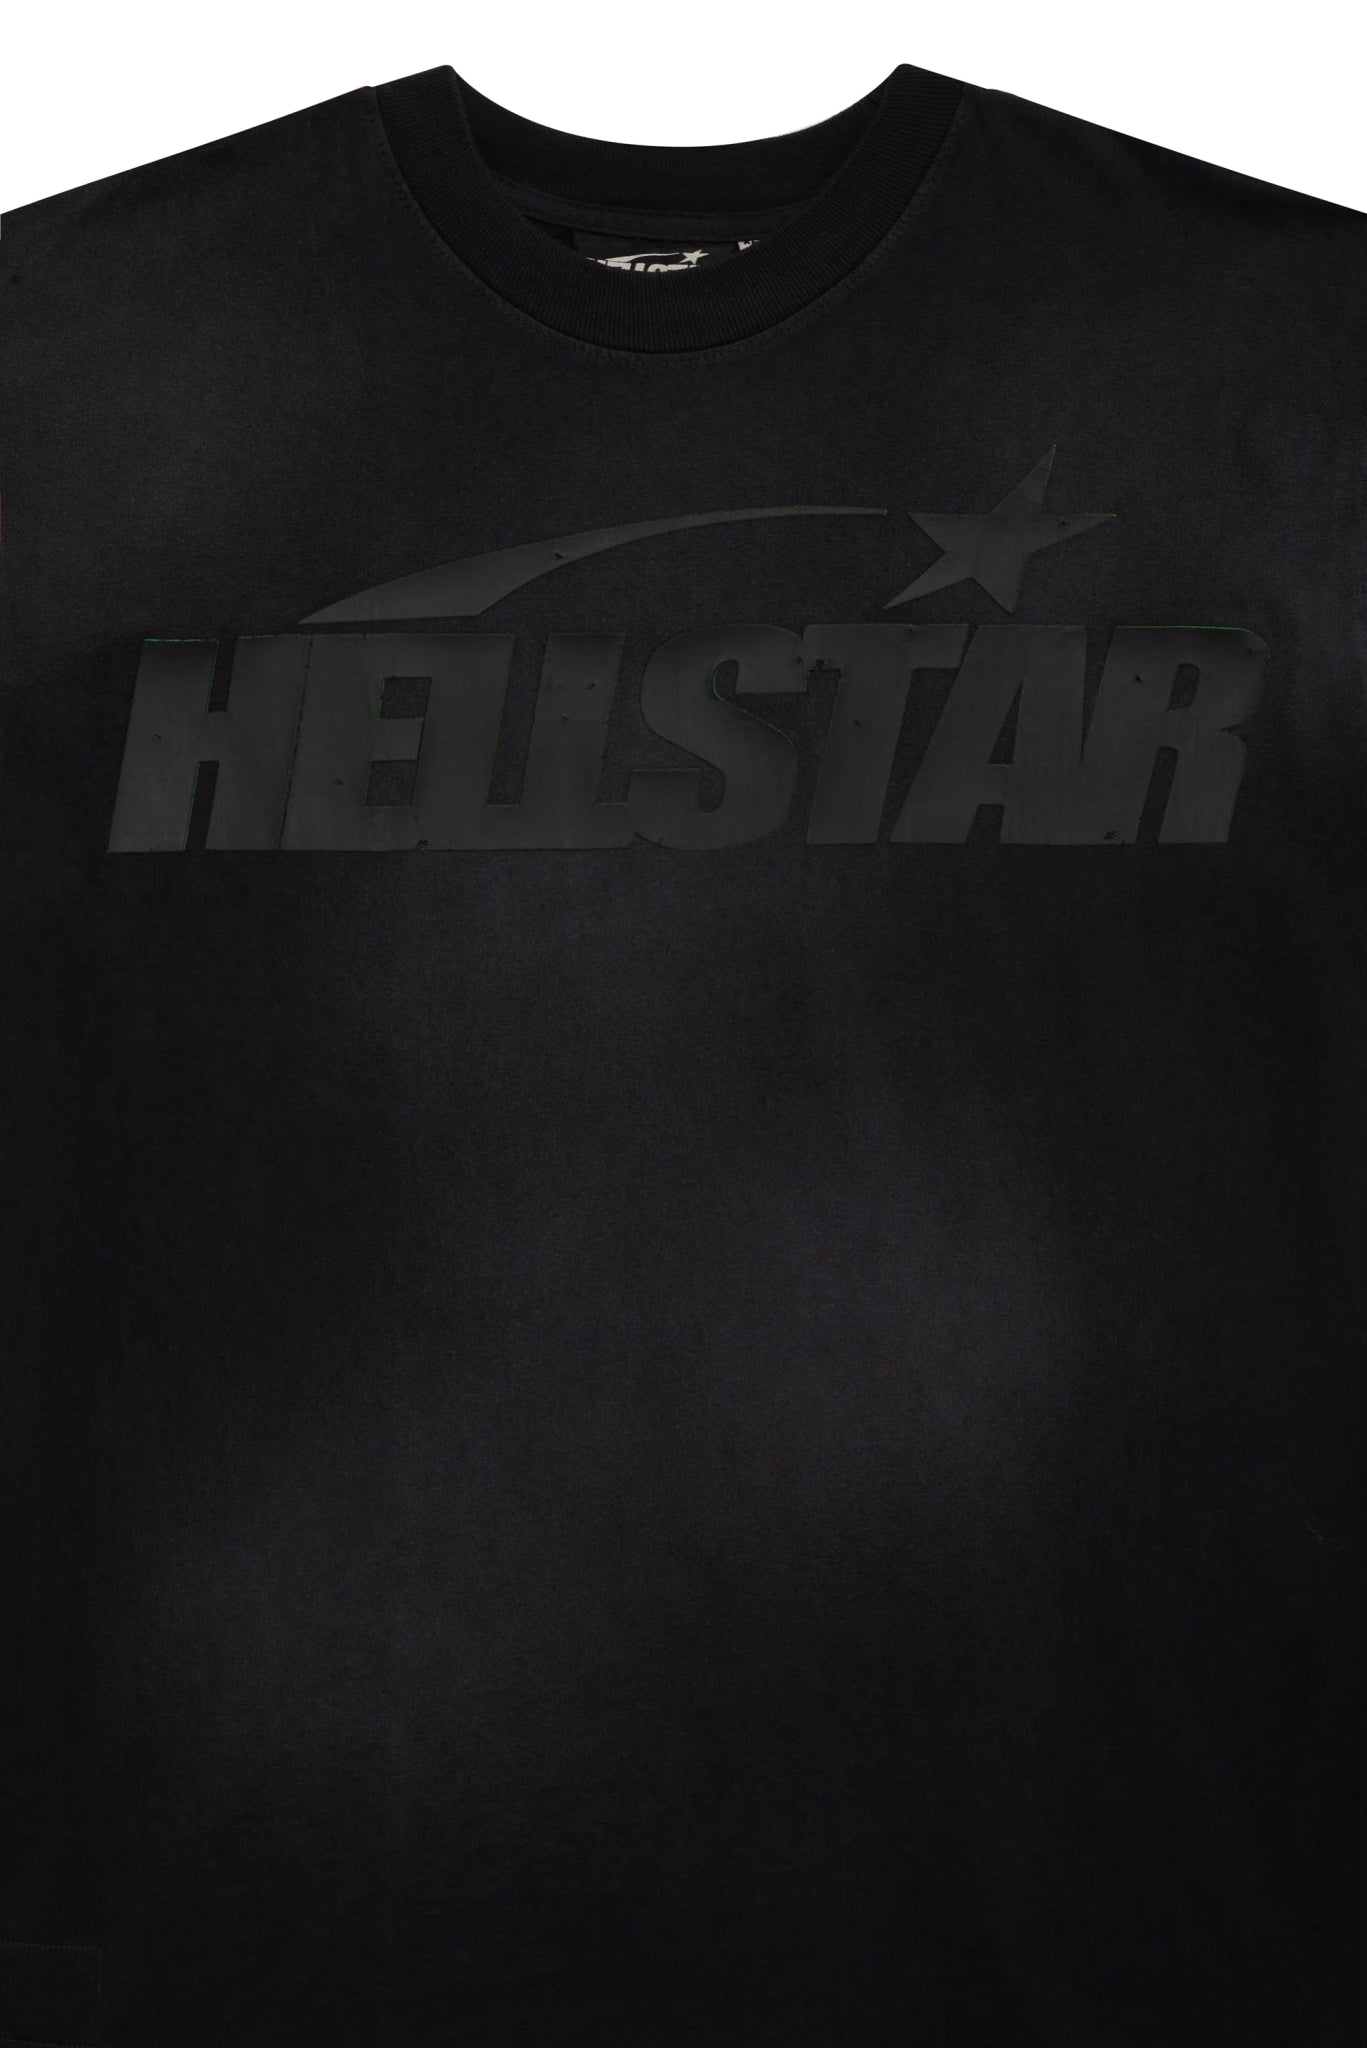 Hellstar Cracked T-Shirt Black - Sneakersbe Sneakers Sale Online